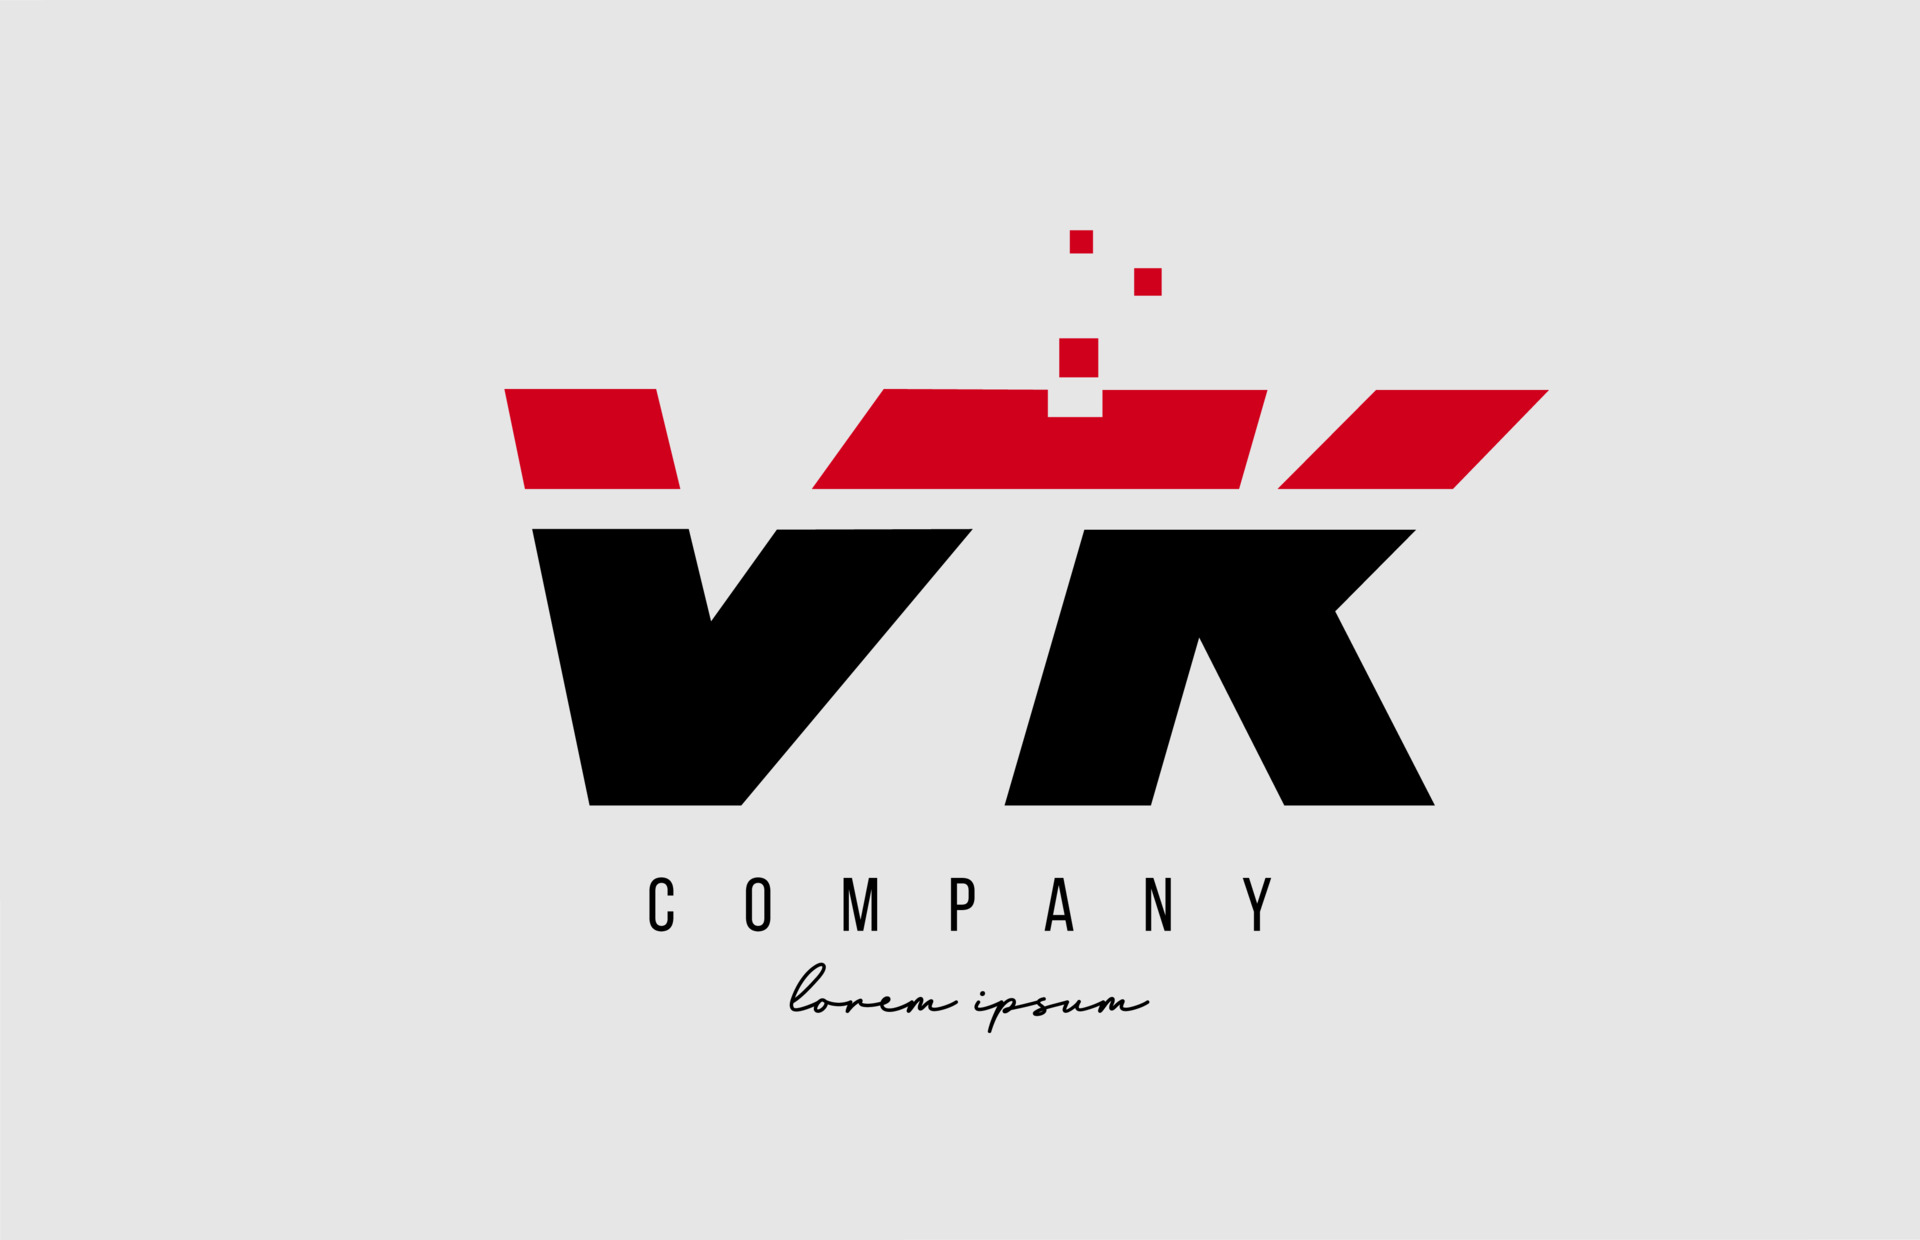 logotipo da letra vk. modelo de vetor de design de logotipo de